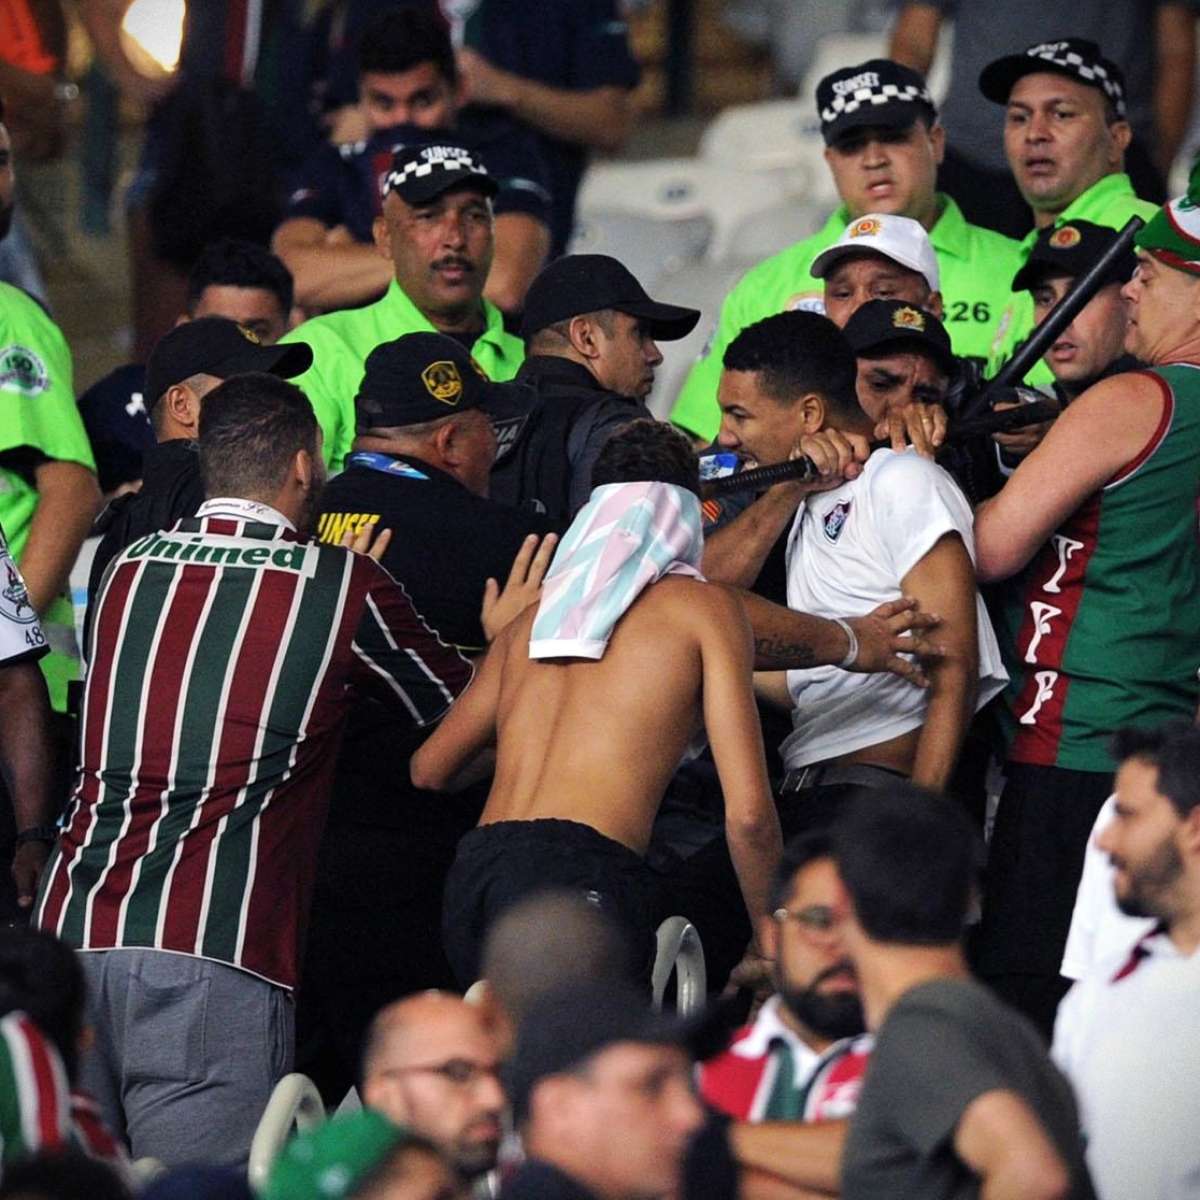 As finais da Libertadores eram guerras', diz presidente da